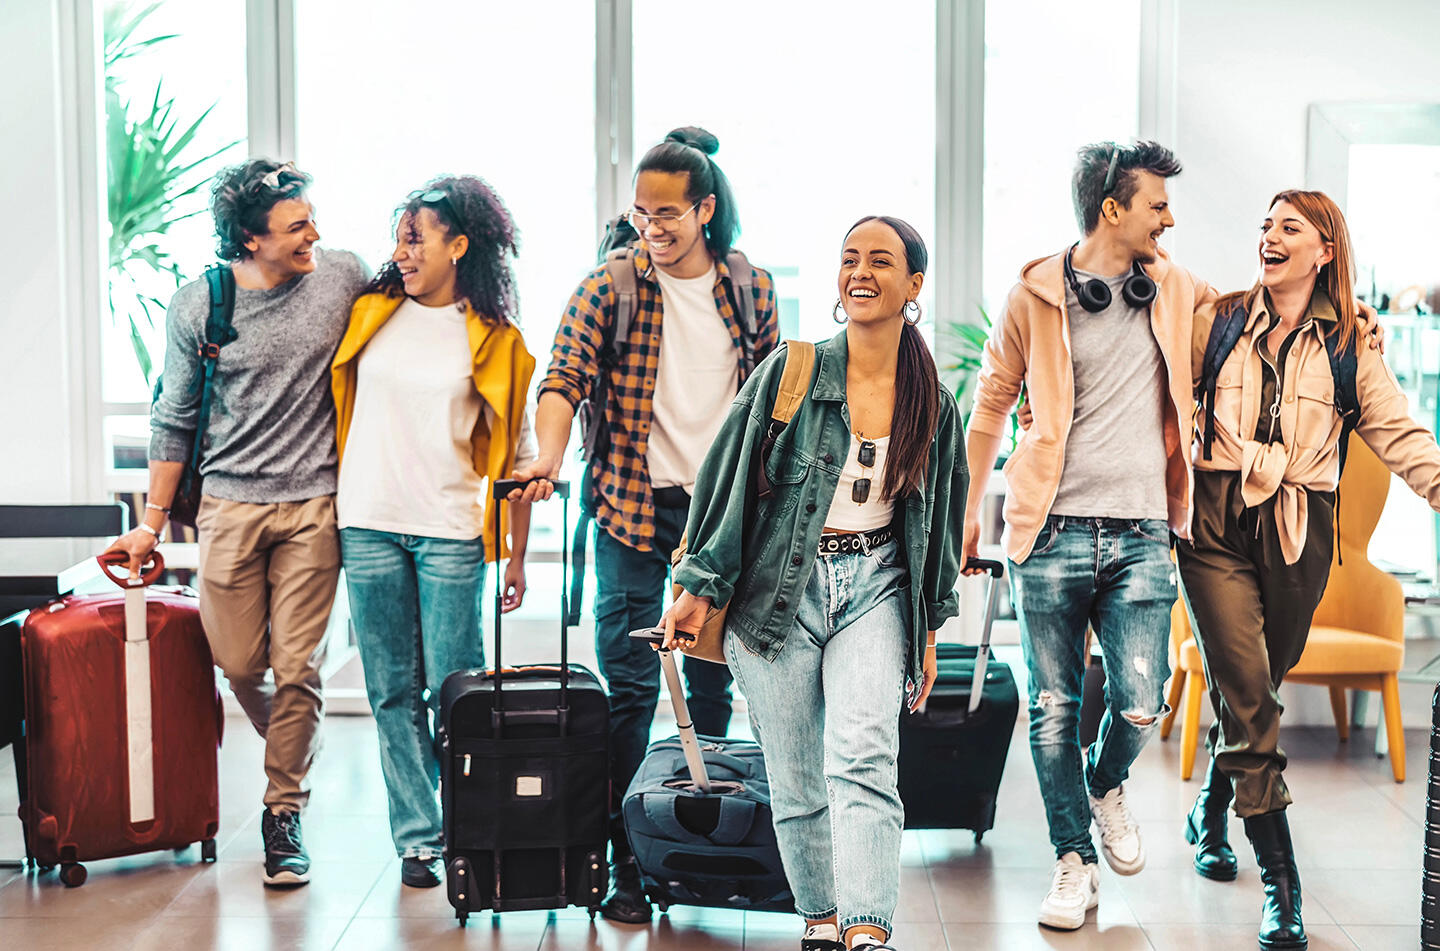 Groupe d'amis joyeux avec bagages à l'aéroport de Toulouse-Blagnac, début d'un voyage excitant.